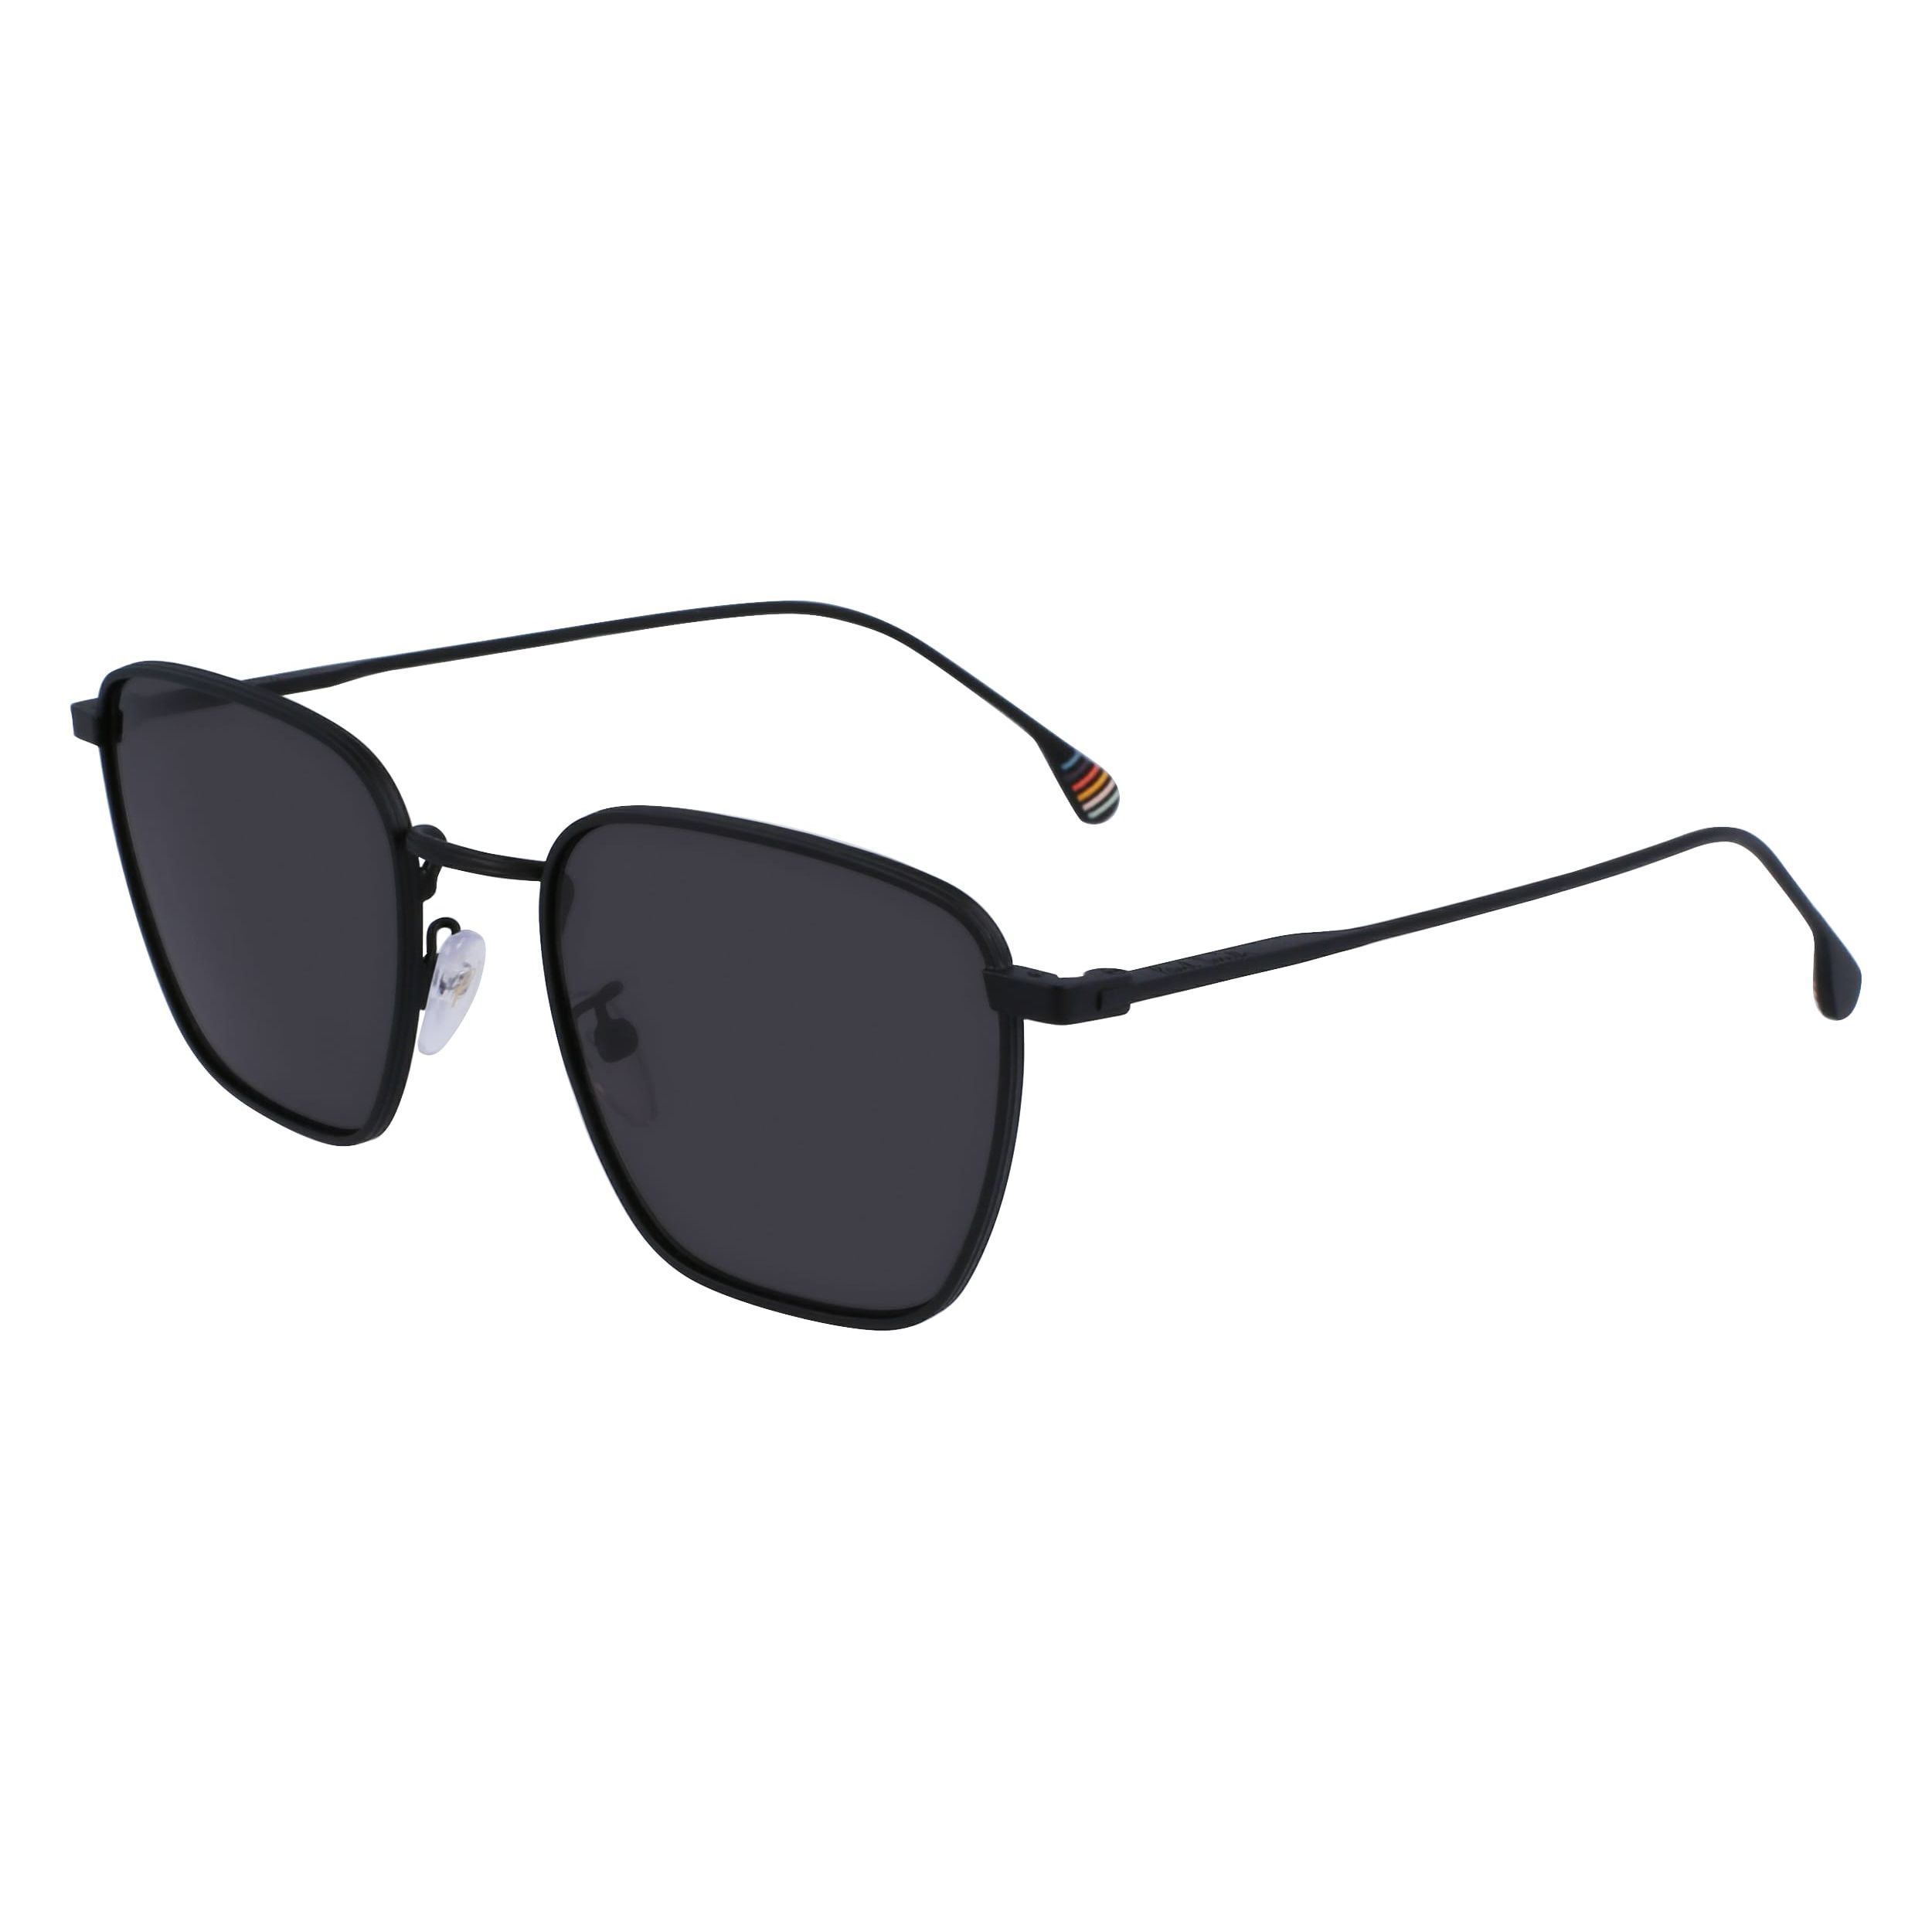 ERROL Square Sunglasses 003 - size 53